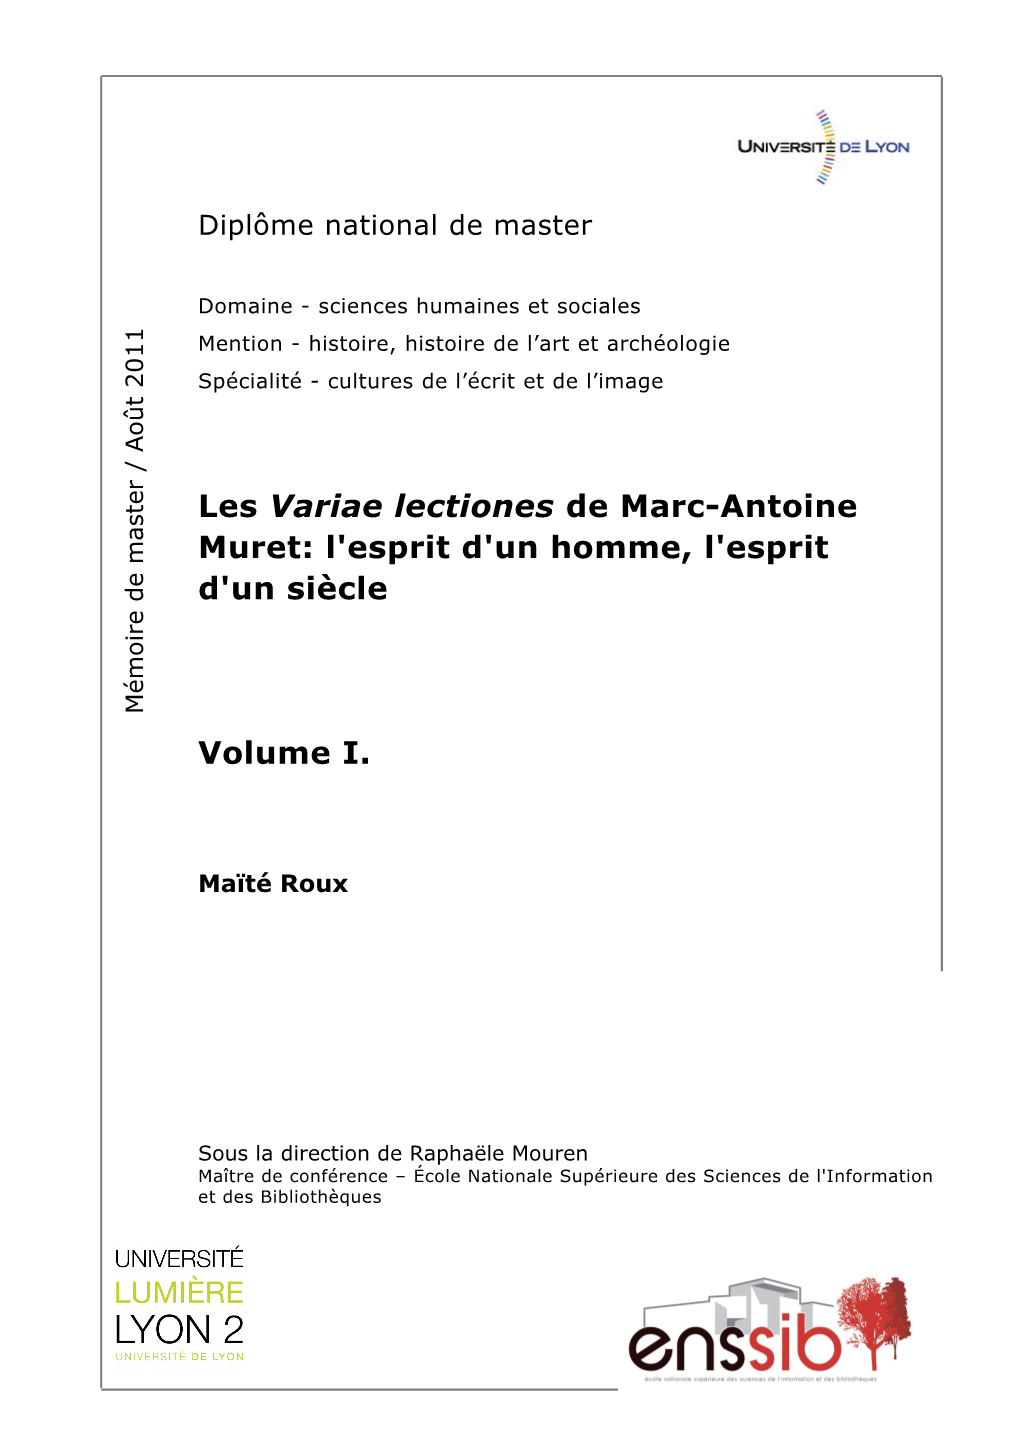 Les Variae Lectiones De Marc-Antoine Muret: L'esprit D'un Homme